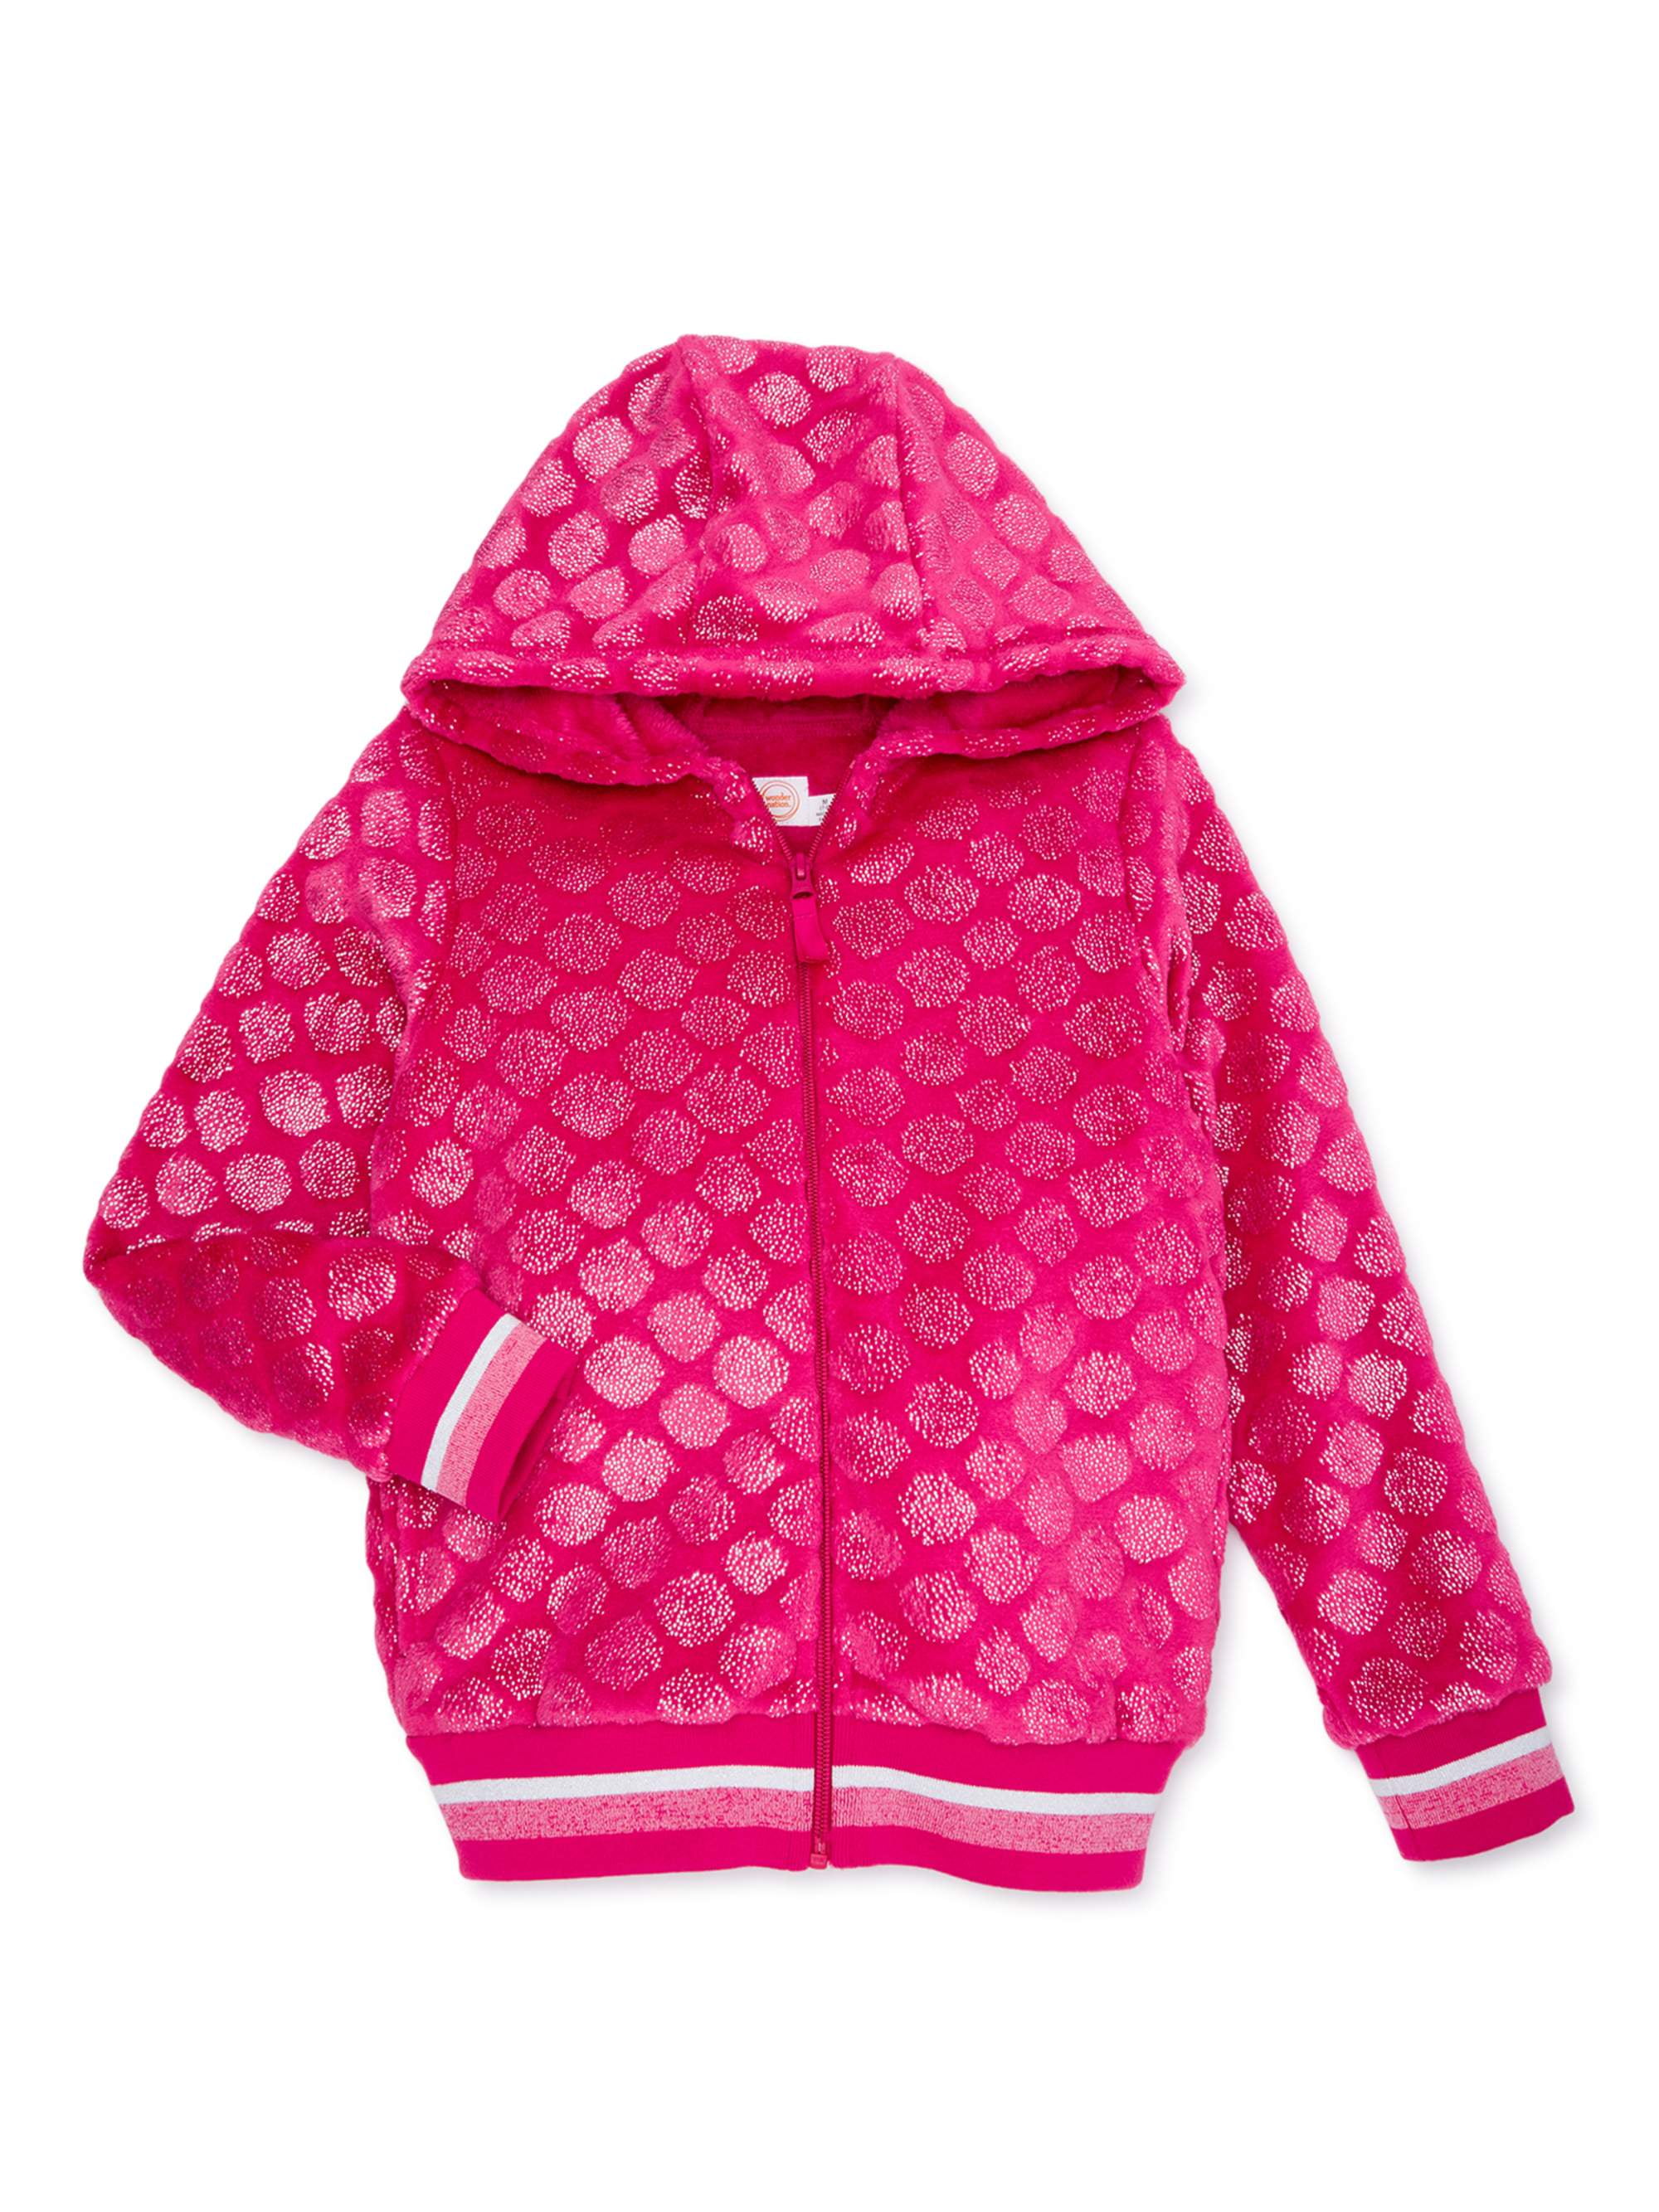 Girls Plush Full-Zip Fleece Jacket with Hood